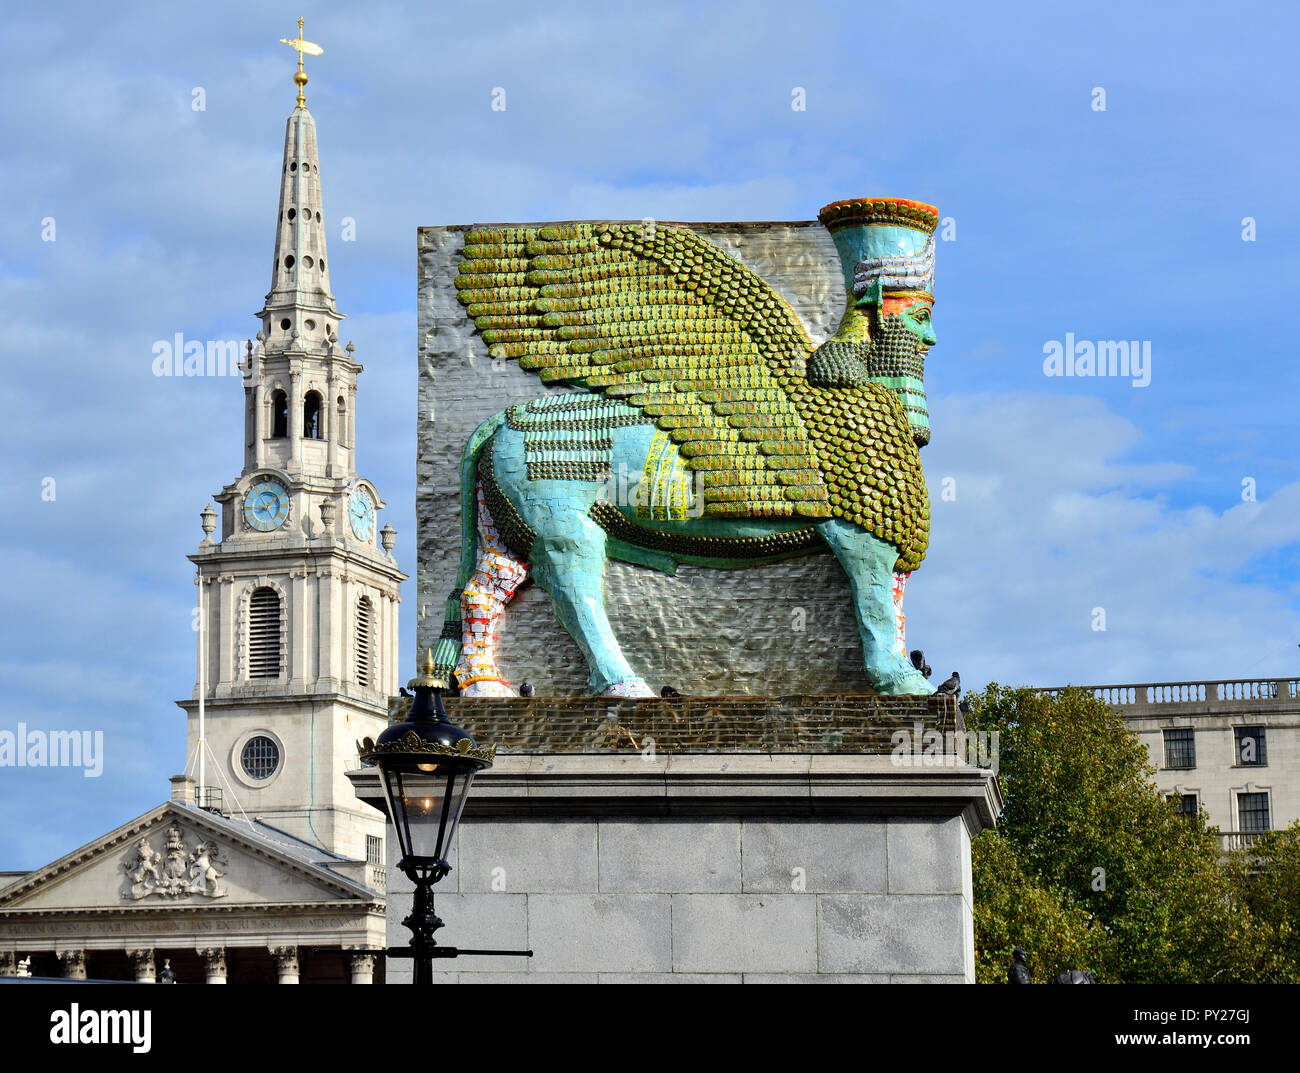 "Die unsichtbaren Feind sollte nicht auf den vierten Sockel auf dem Trafalgar Square, London, England, UK. 2018. Von Michael Rakowitz entworfen und hergestellt aus Stockfoto